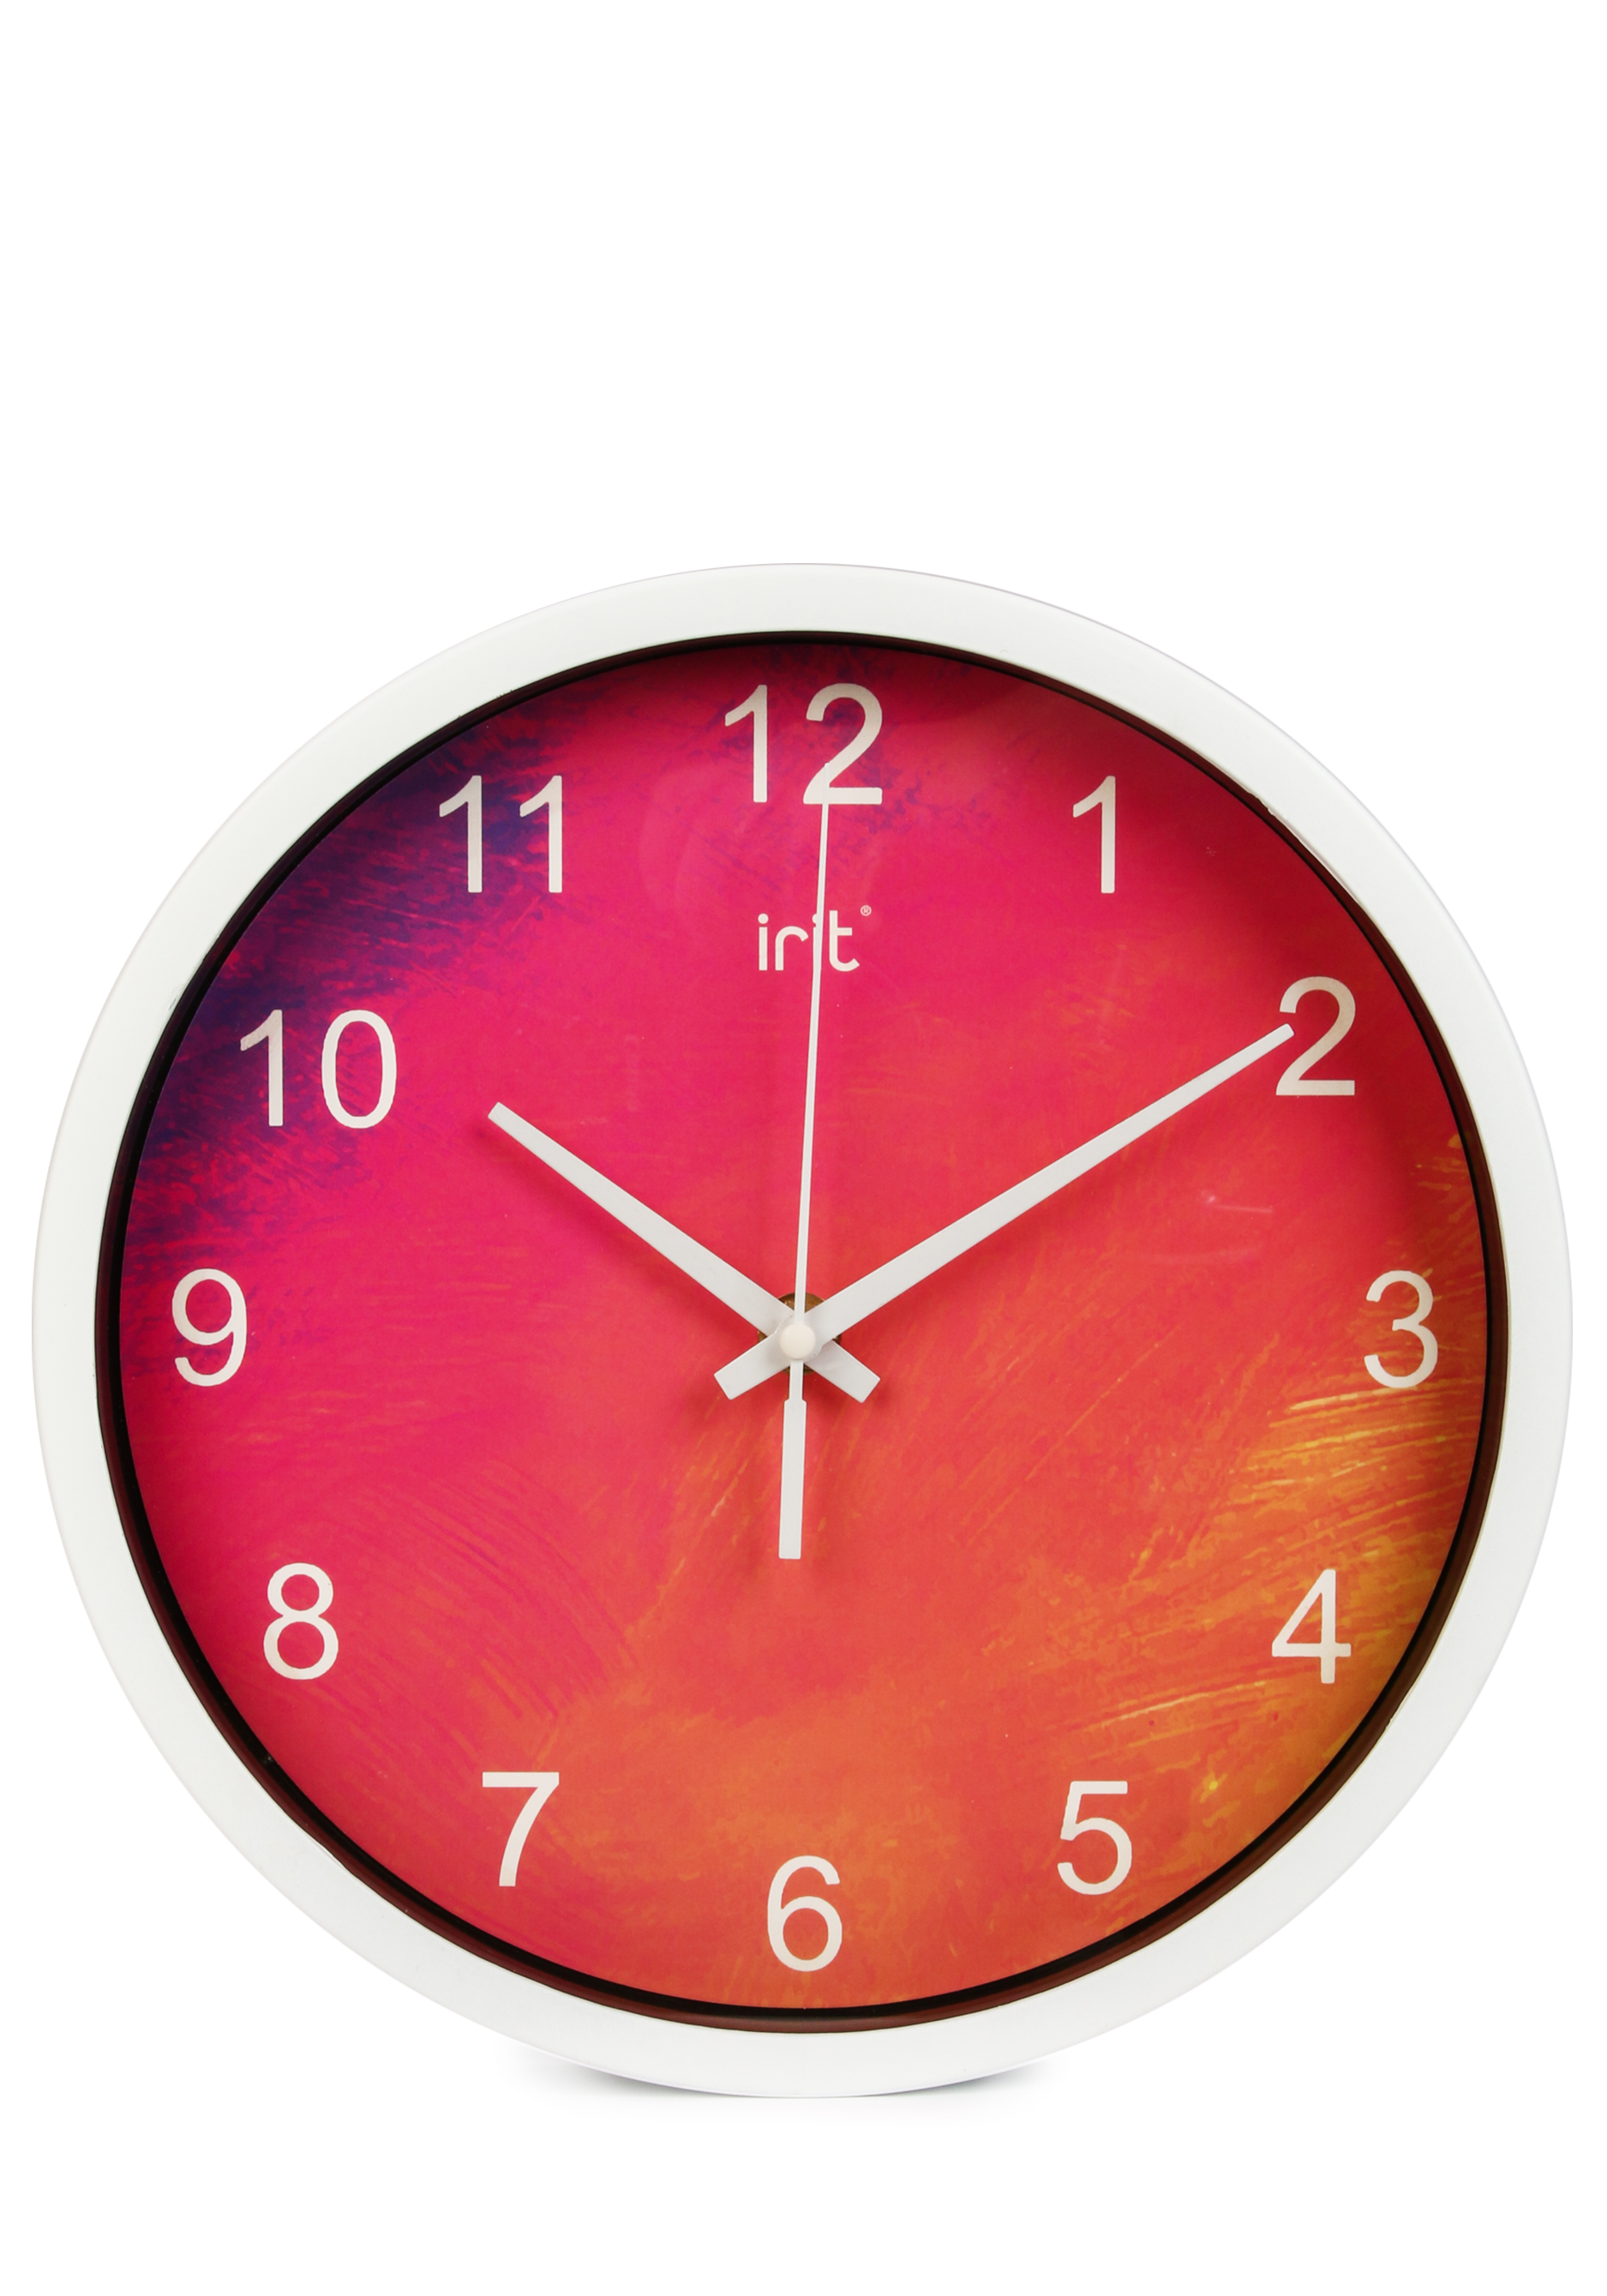 Круглые настенные часы IRIT, цвет голубой, размер 25 см - фото 2